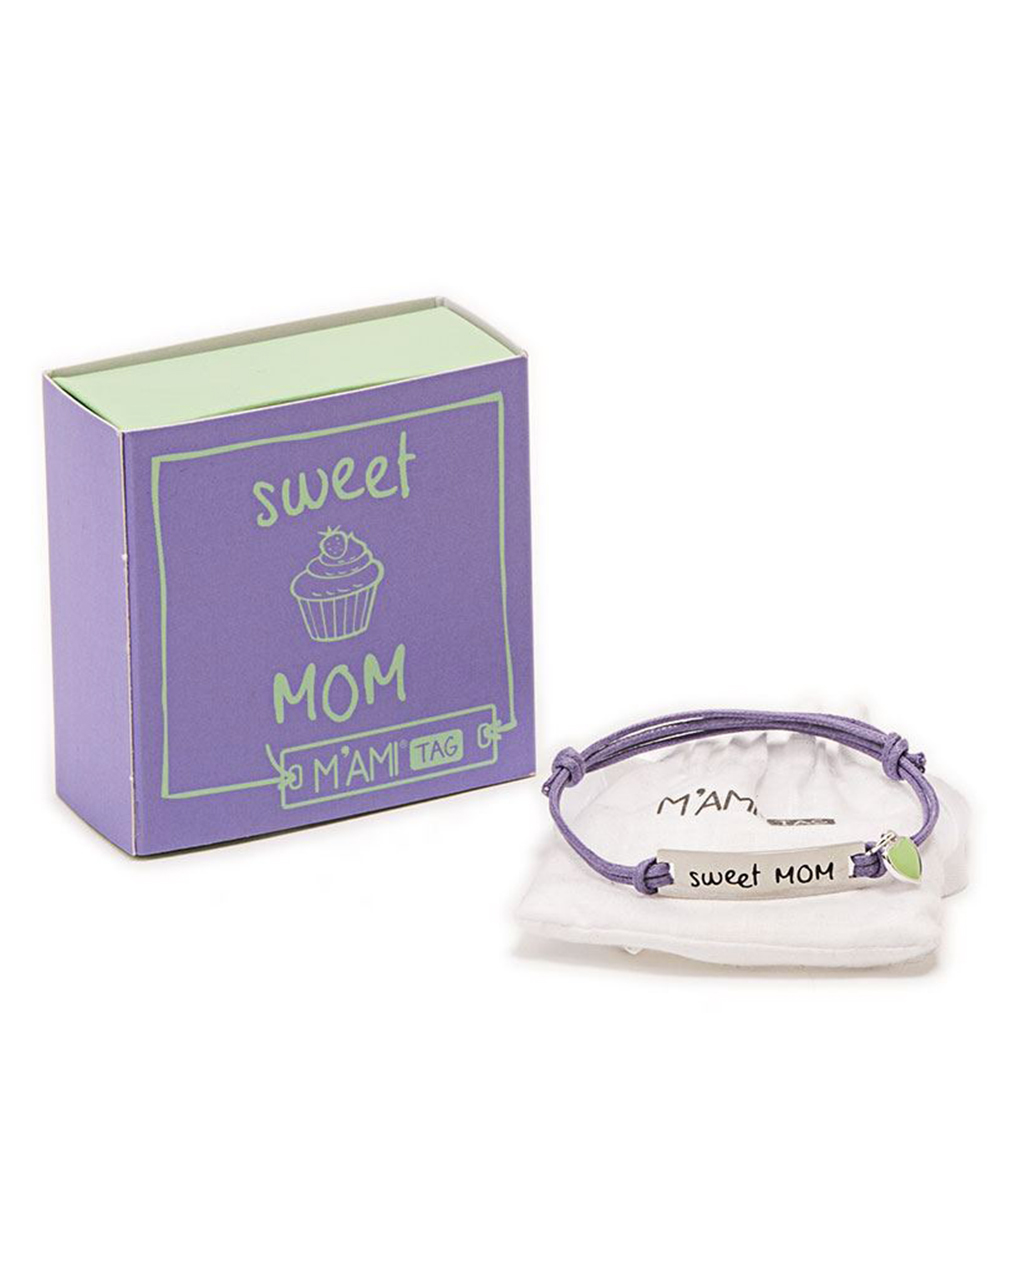 Mamijux - pulsera m’ami® tag sweet mom - MAMI